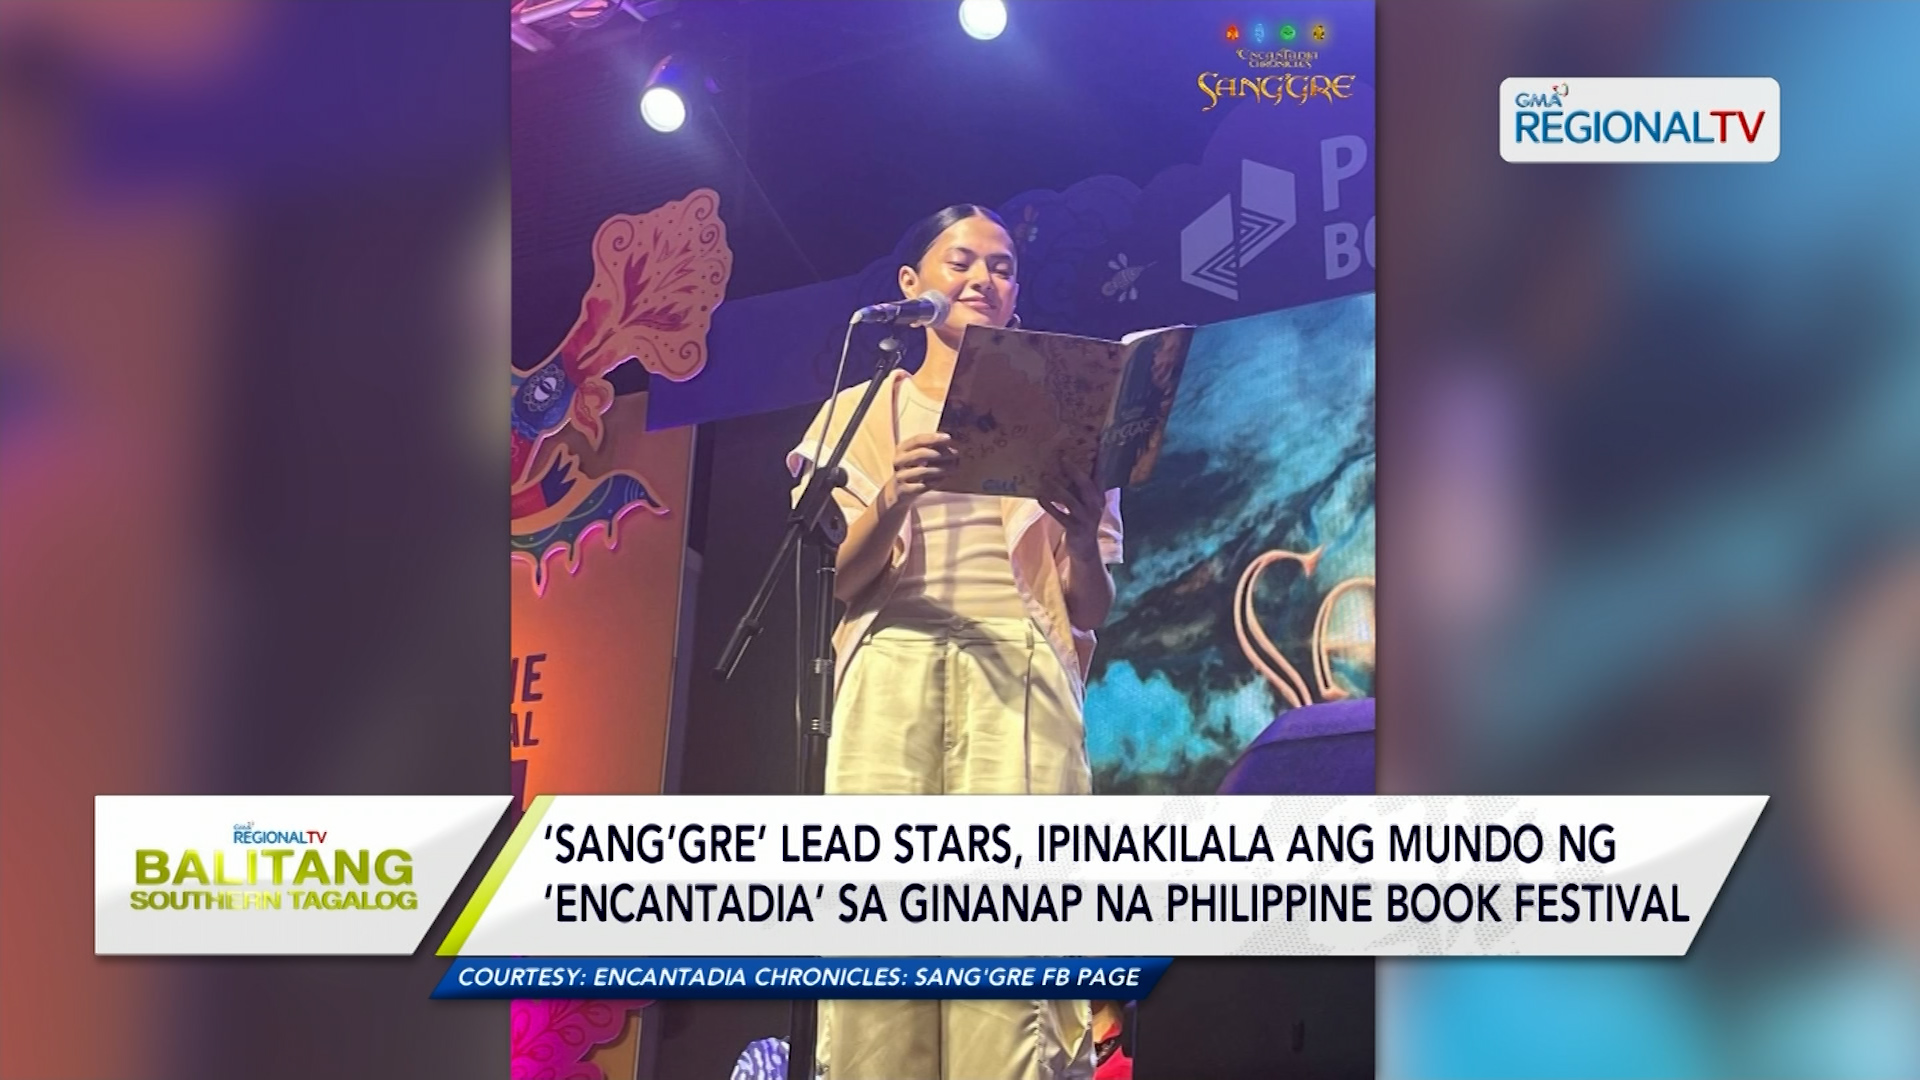 Sang’gre lead stars, ipinakilala ang mundo ng Encantadia sa Book Festival